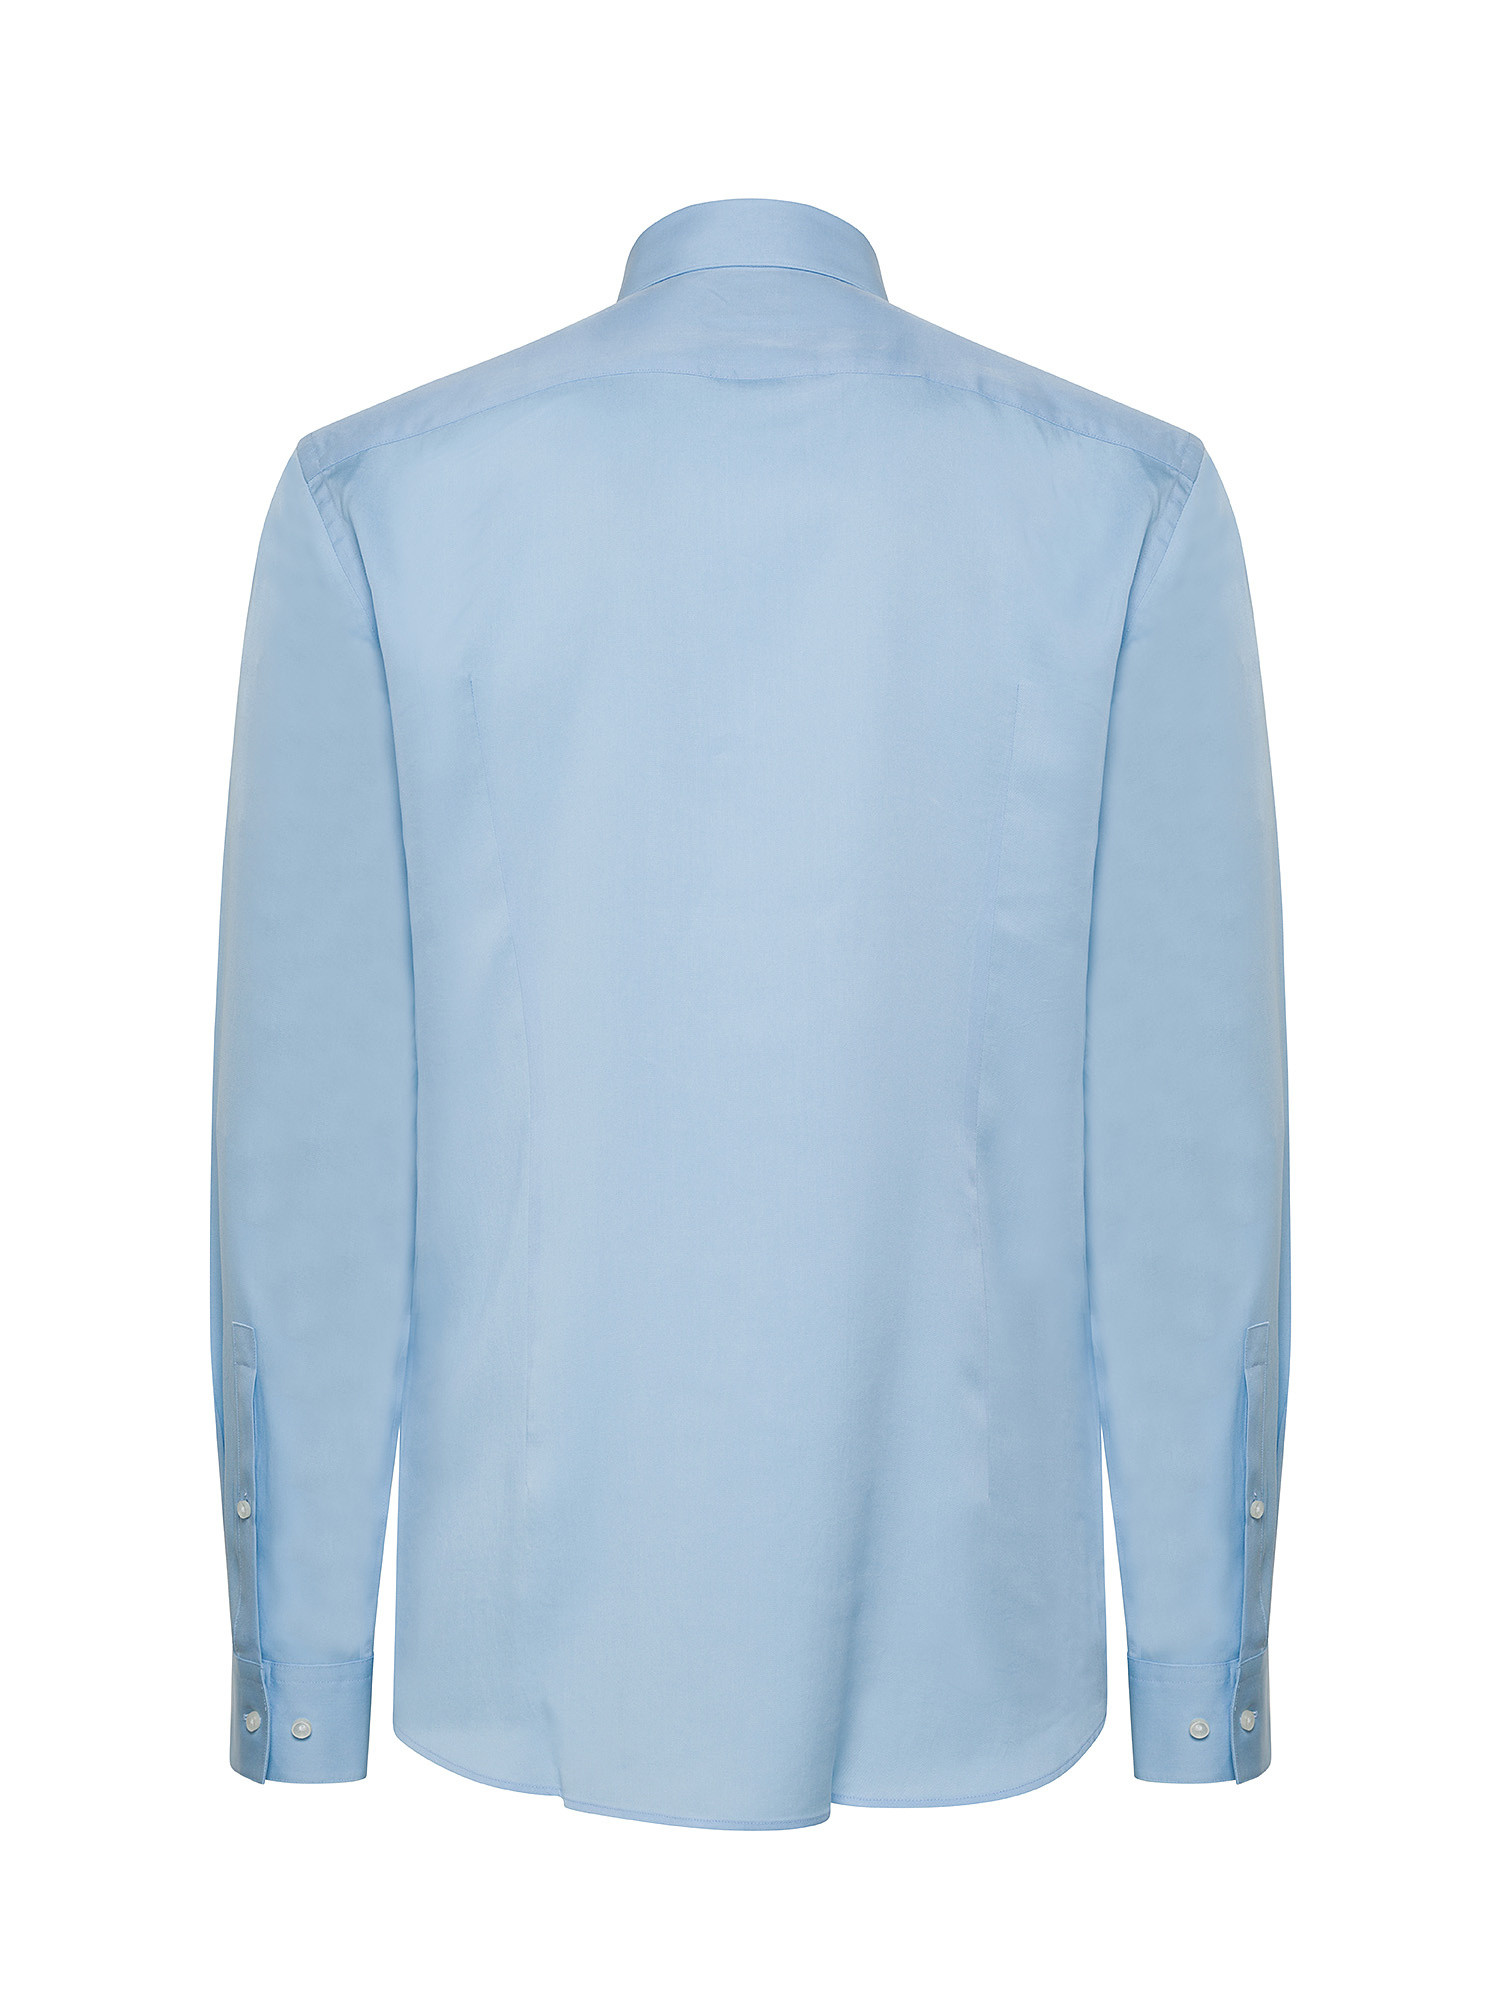 Hugo - Slim fit shirt, Light Blue, large image number 2